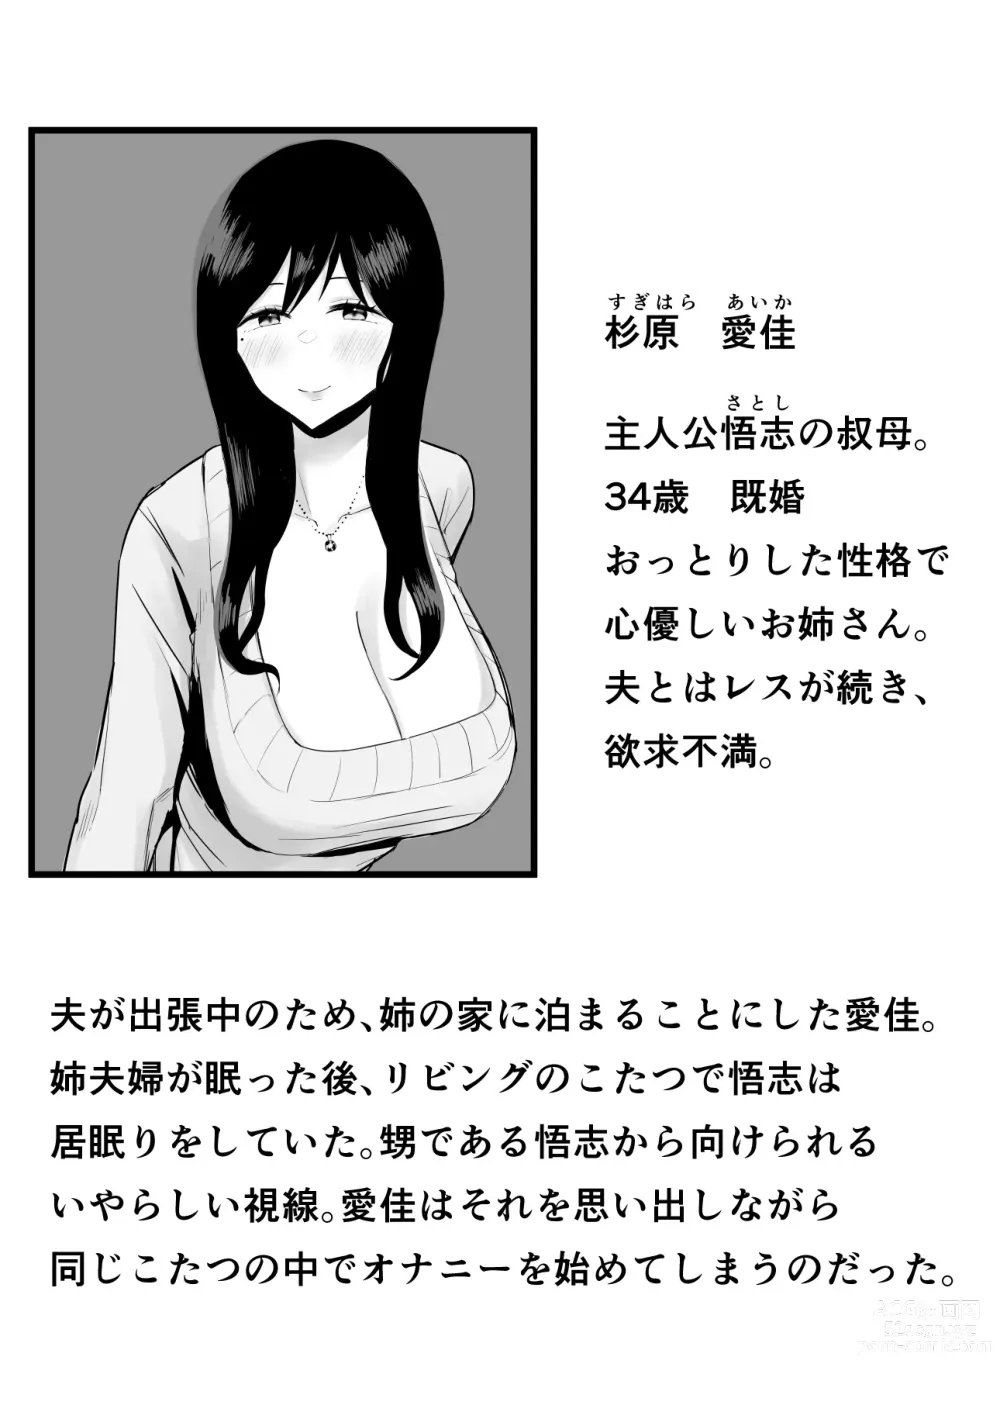 Page 2 of doujinshi Kyounyuu de Bijin na Obasan gan Kotatsu de Onanieshite Takara Asa Made Hamemakutta.